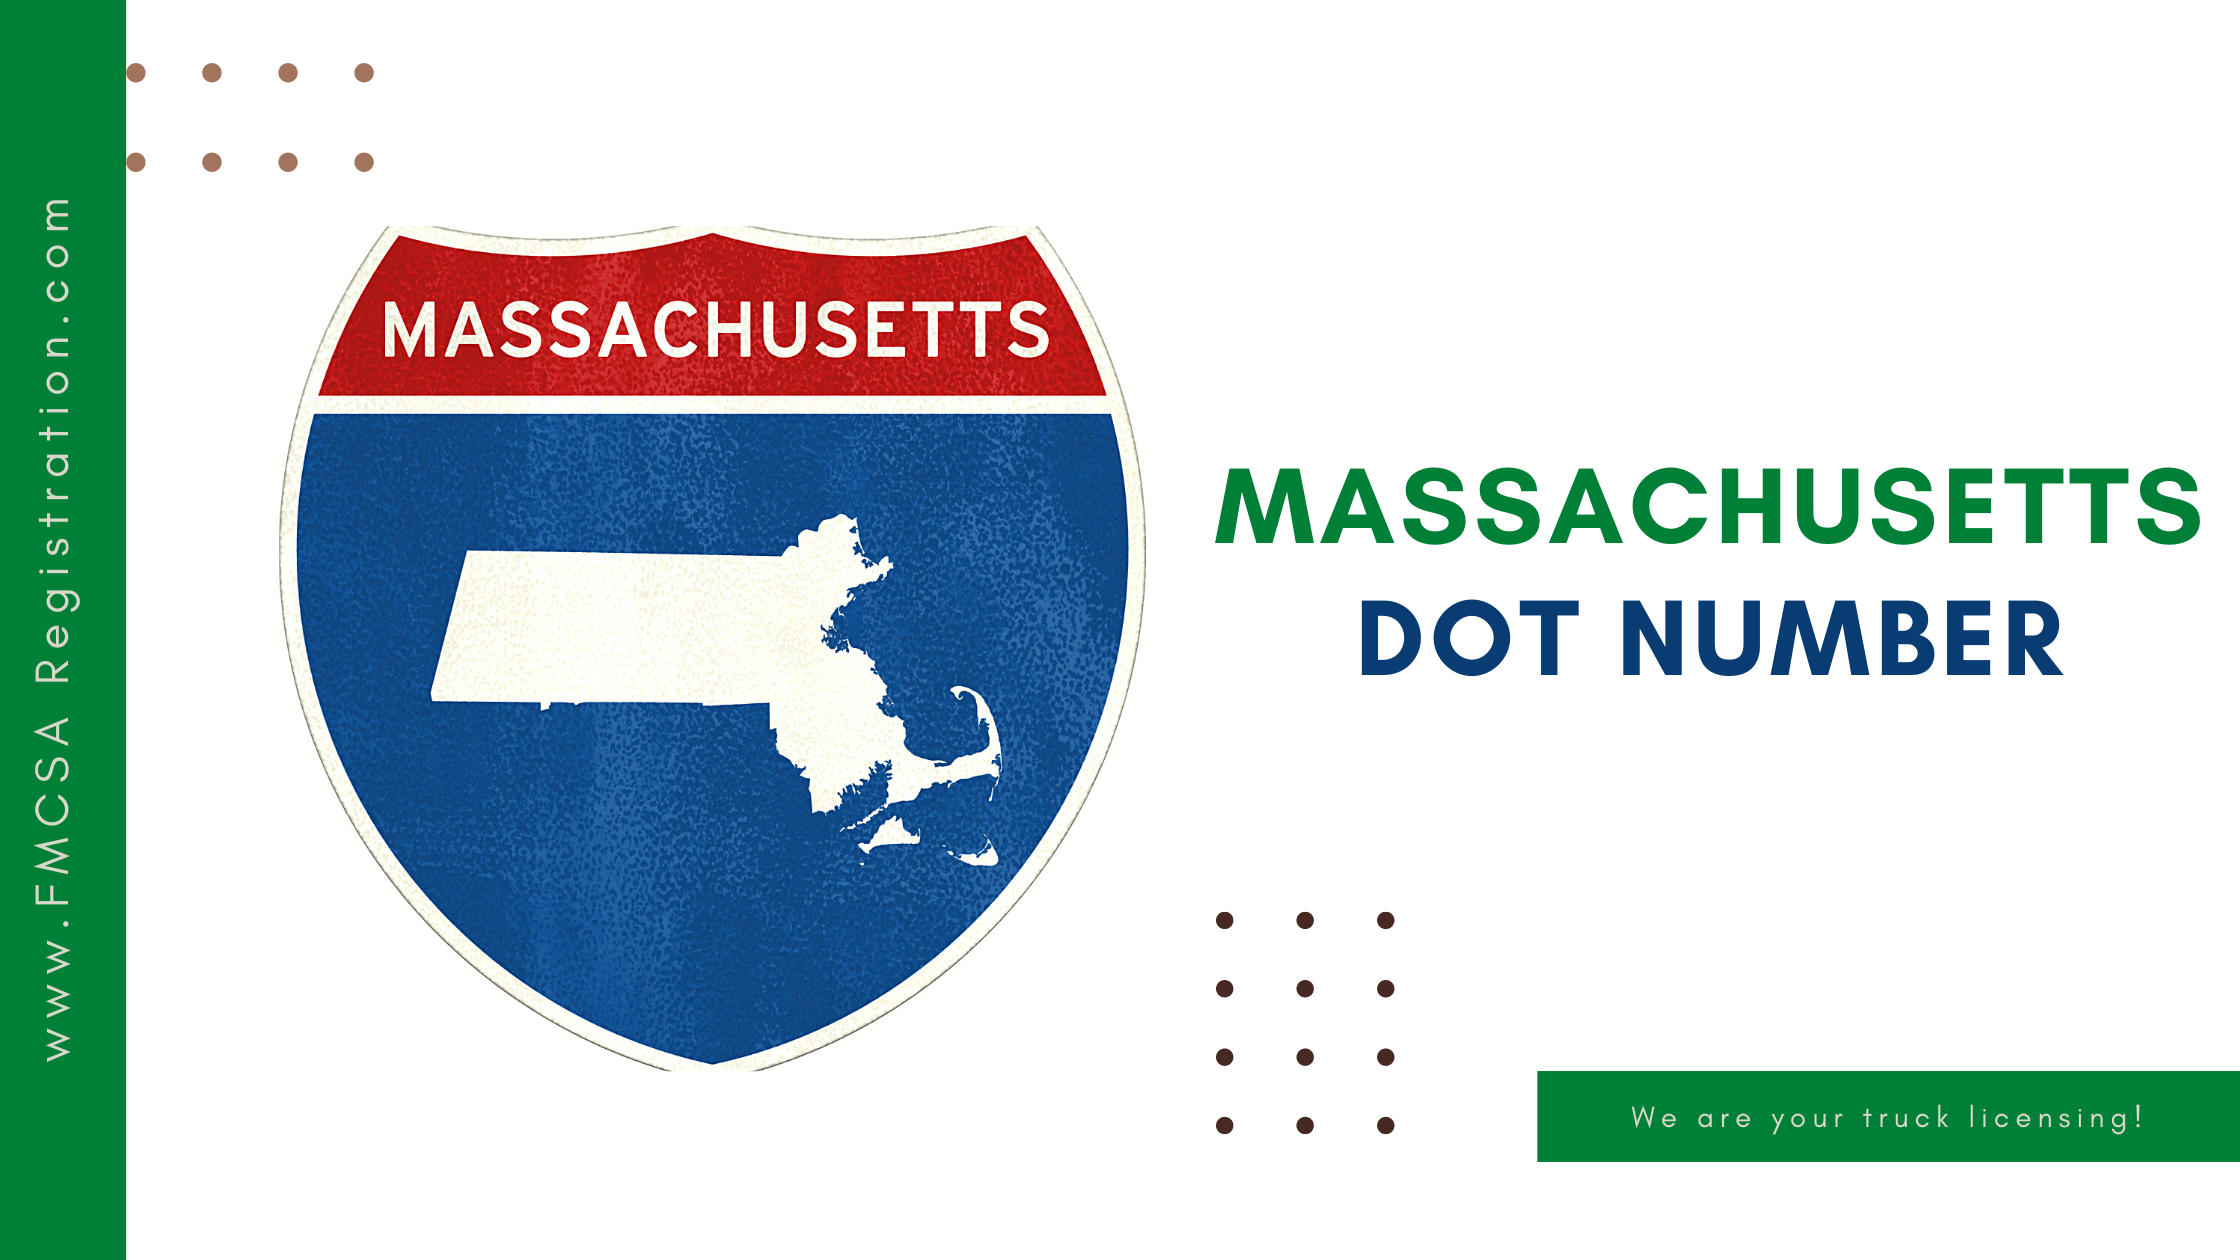 Massachusetts DOT Number